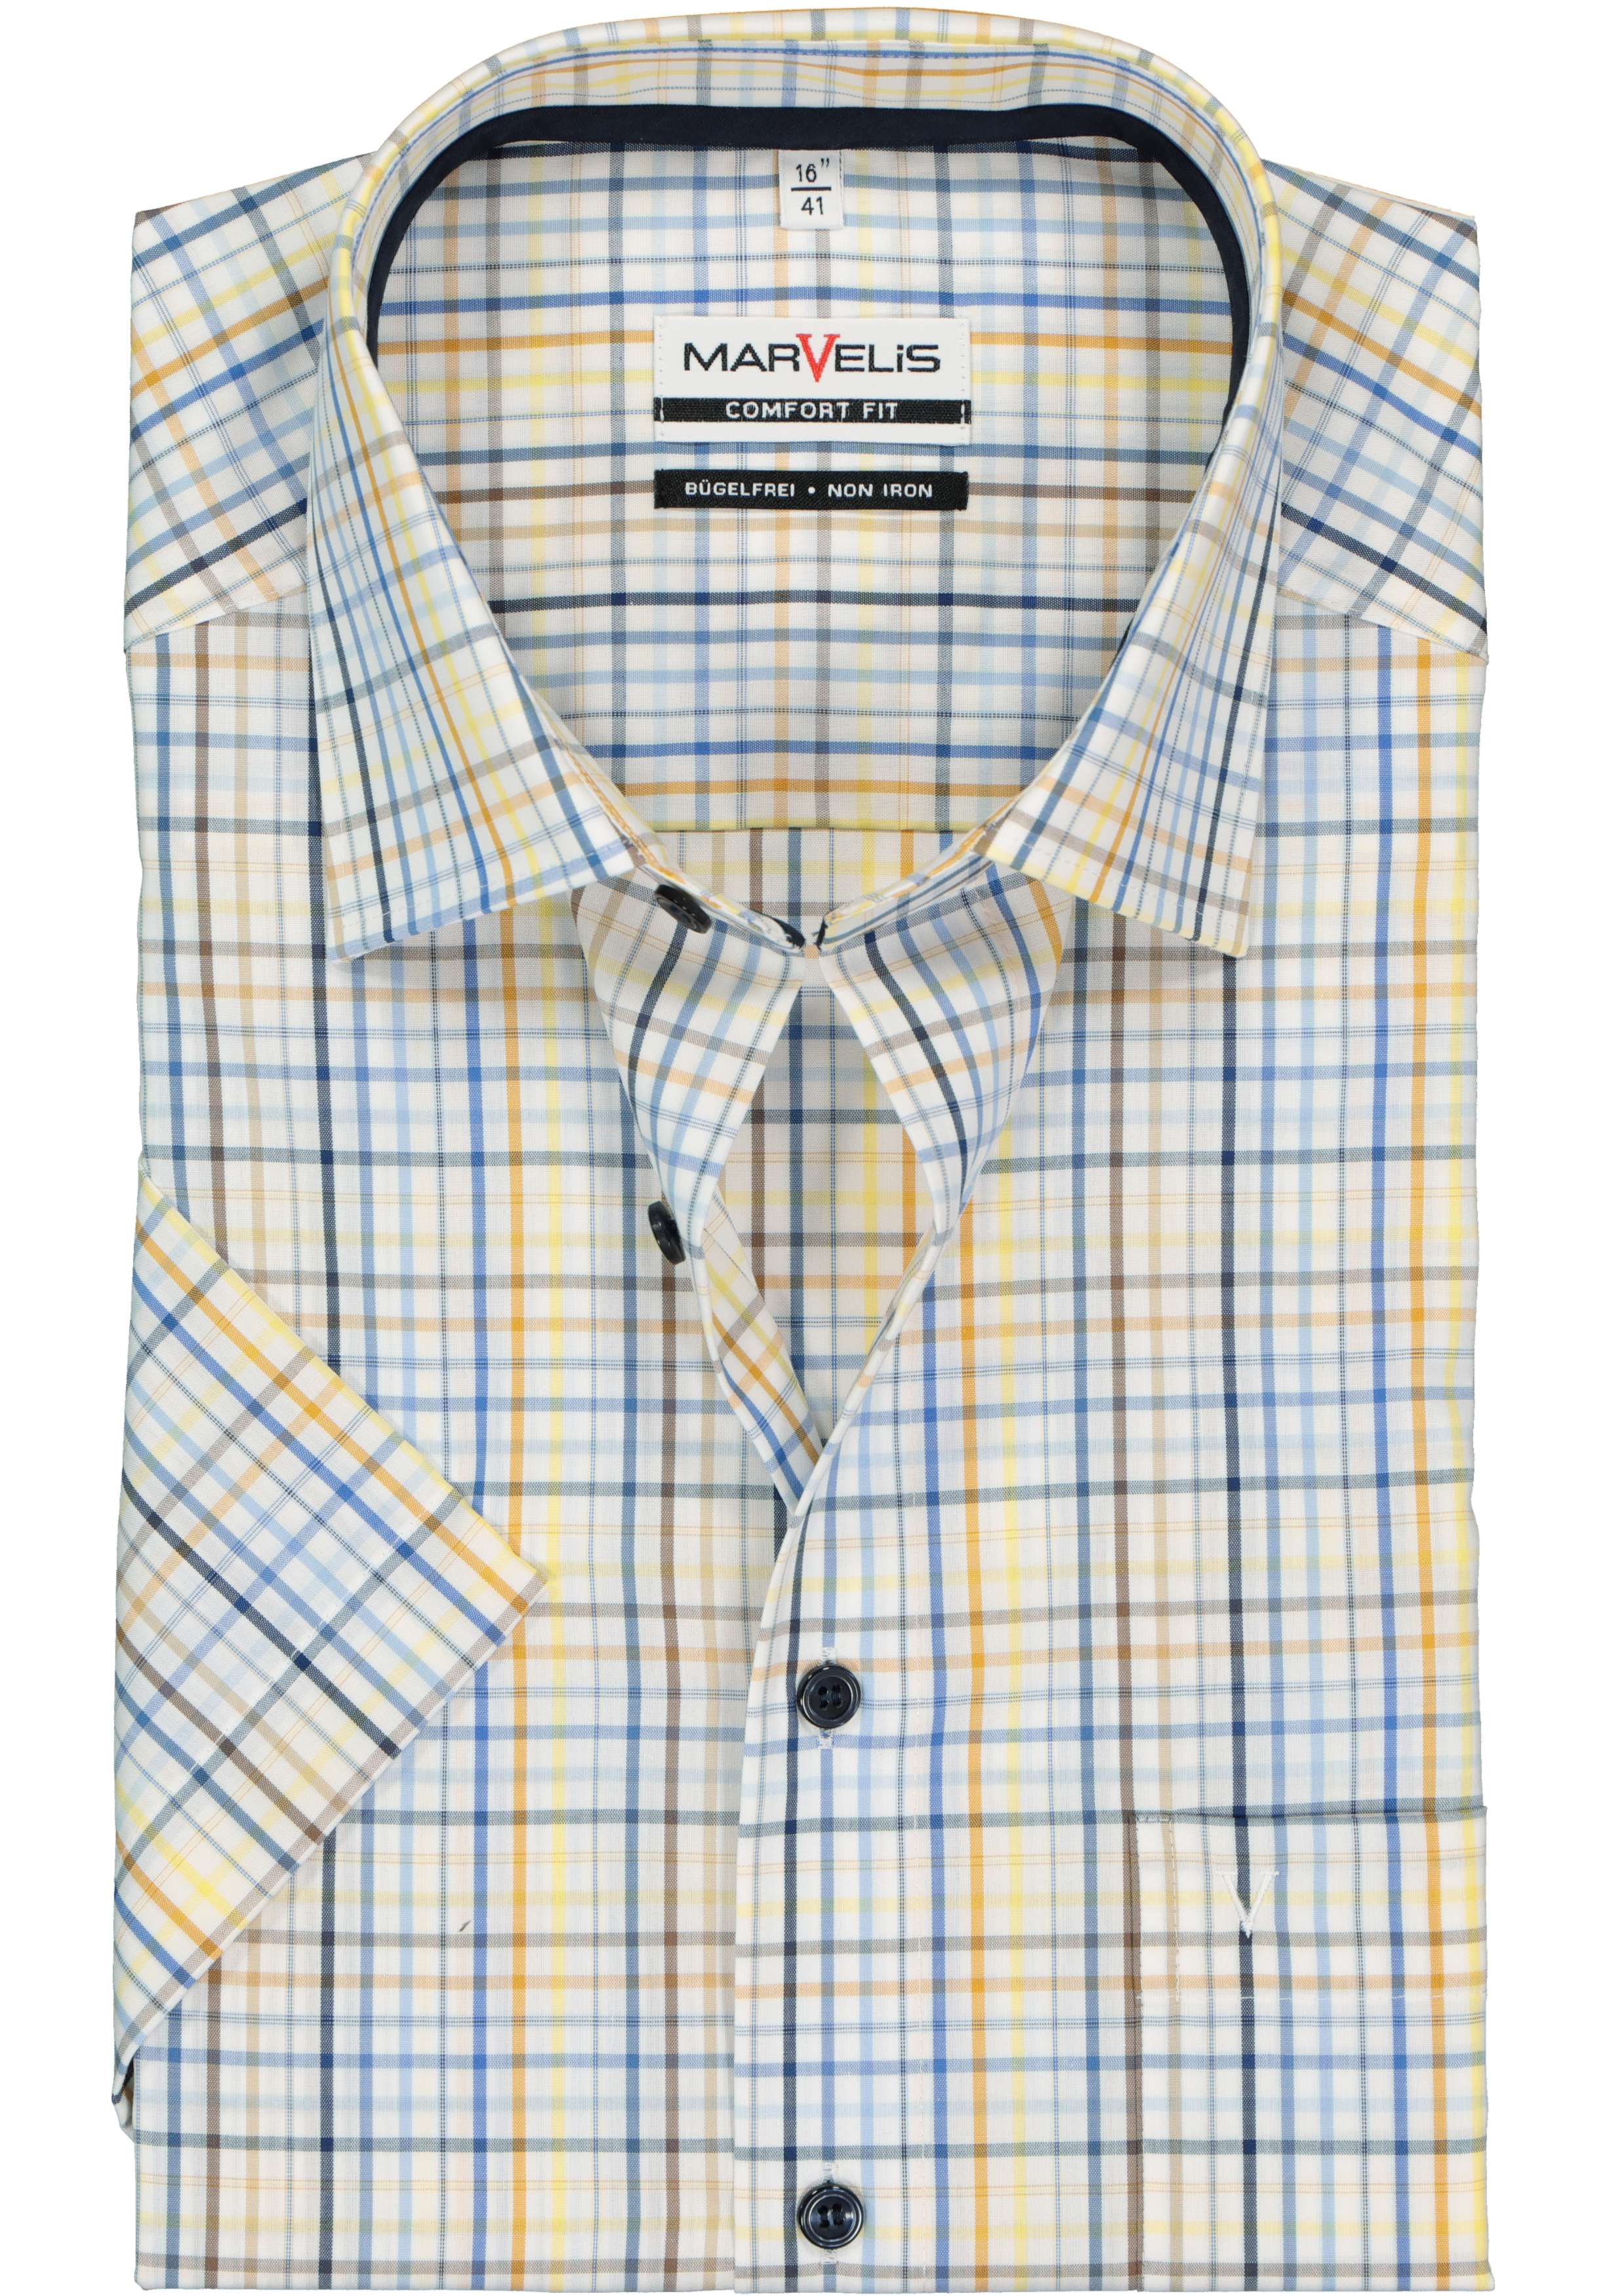 MARVELIS comfort fit overhemd, korte mouw, wit, bruin, blauw en geel geruit (contrast)